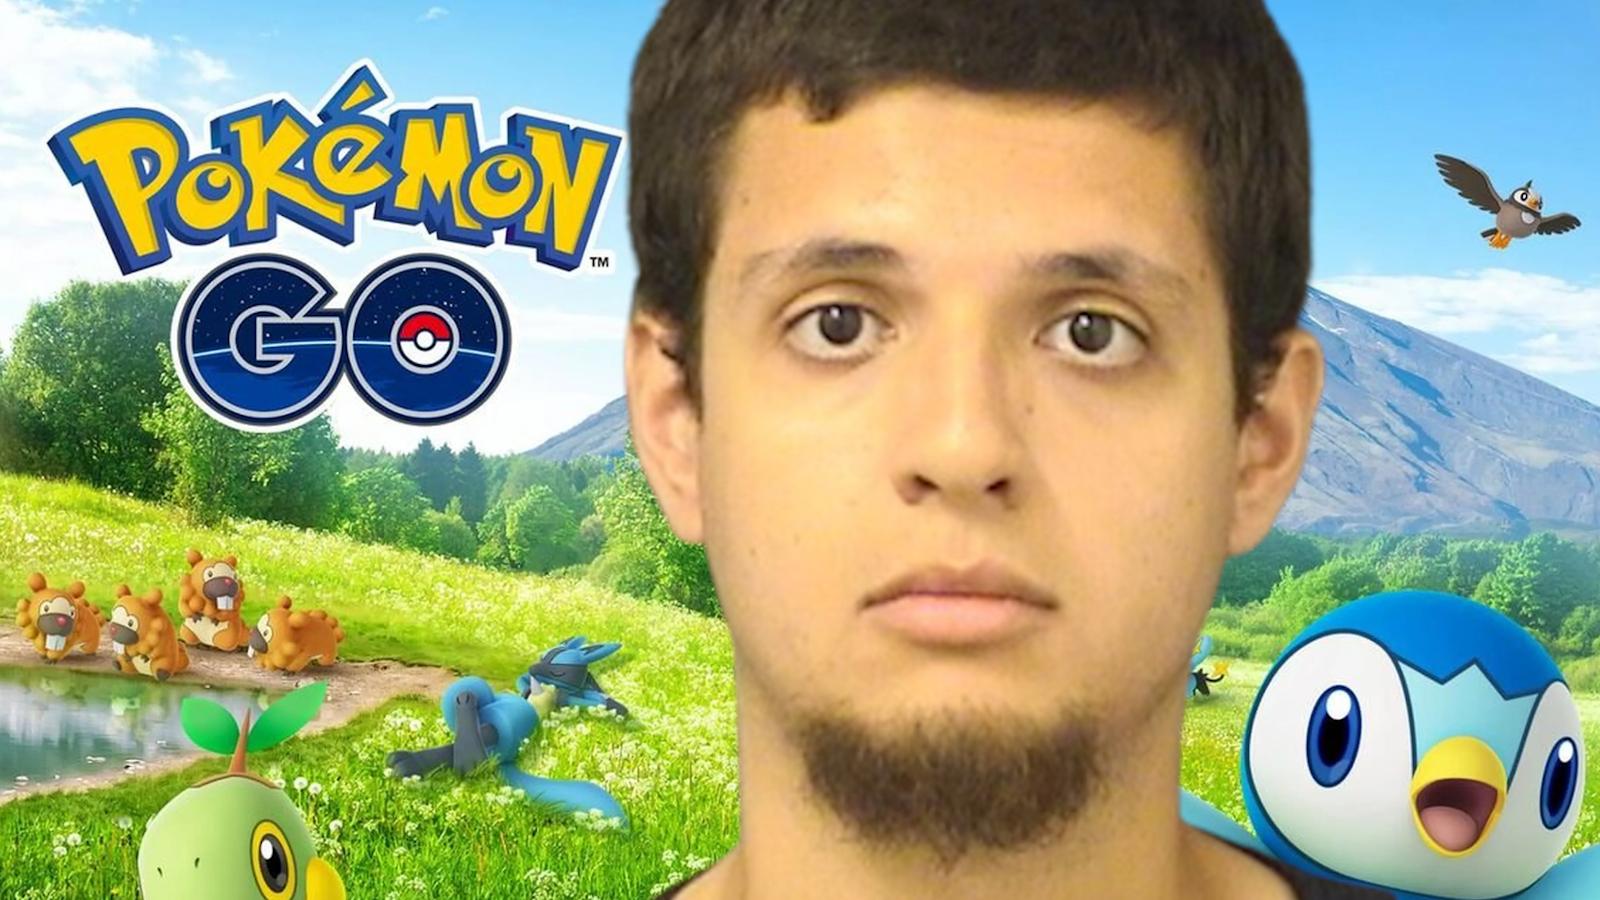 florida man Fernando Gaete arrested for pokemon go discord threats